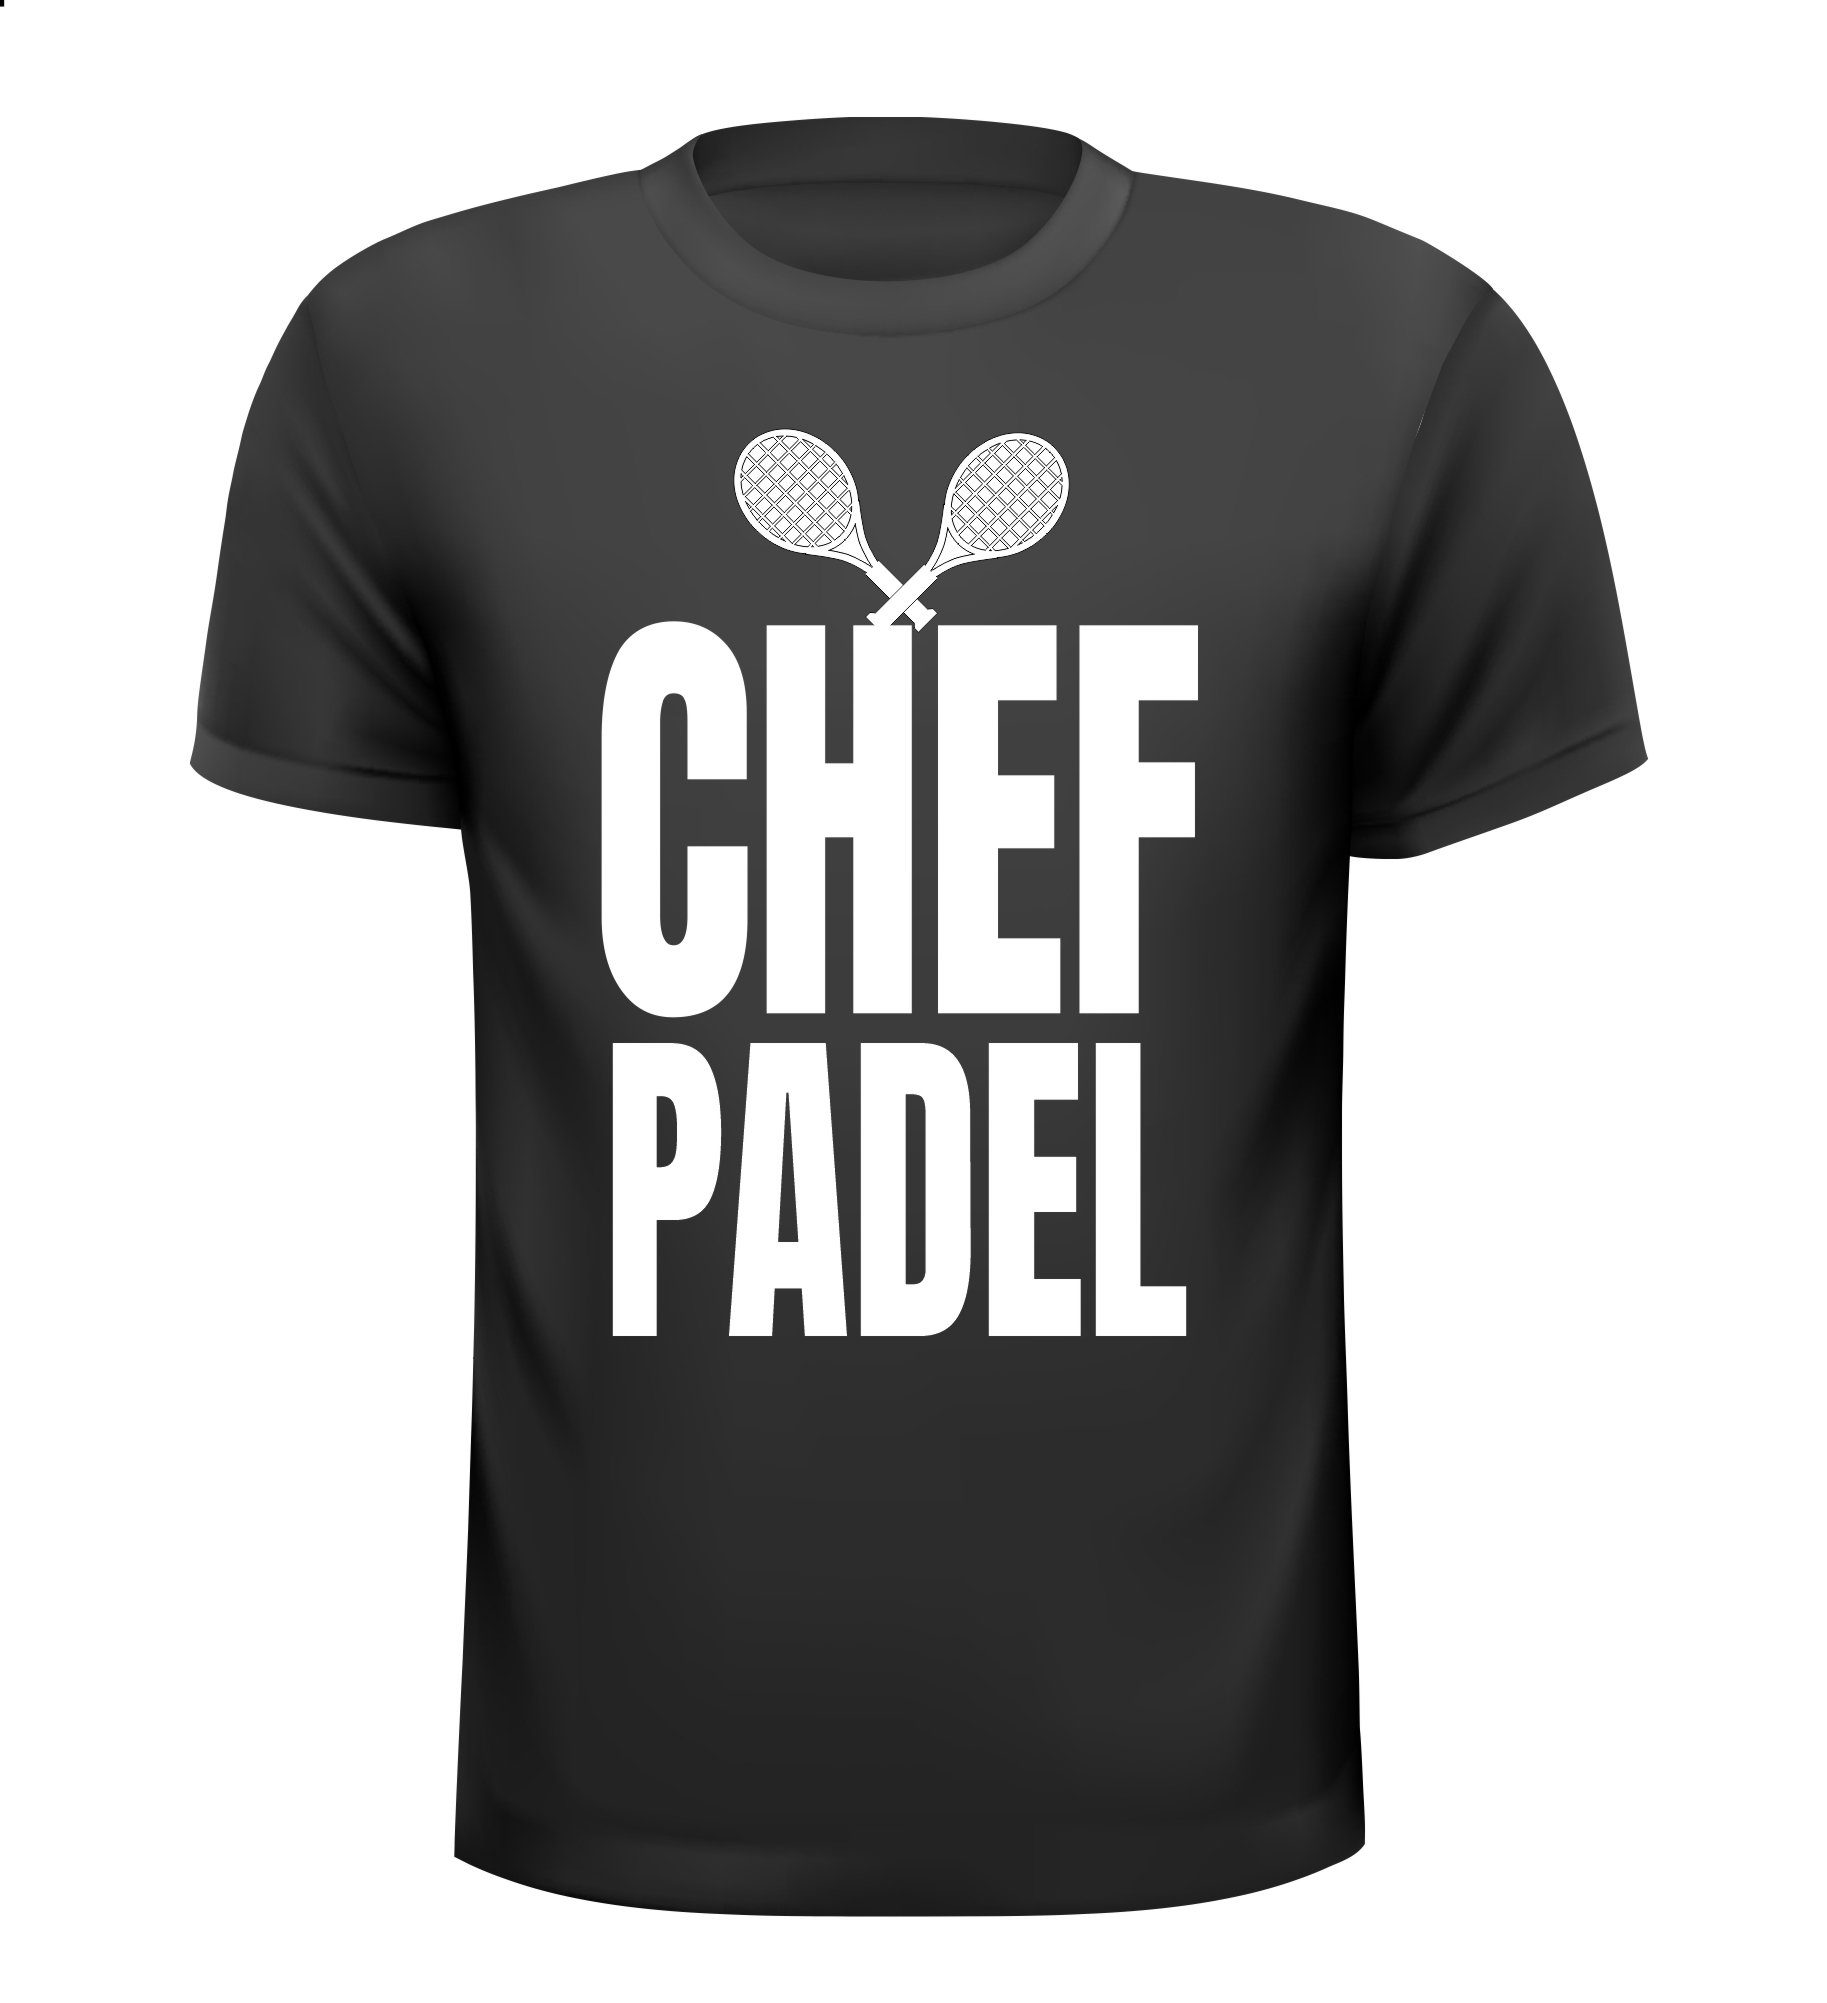 T-shirt voor chef padel. Voor de baas van de padelbaan